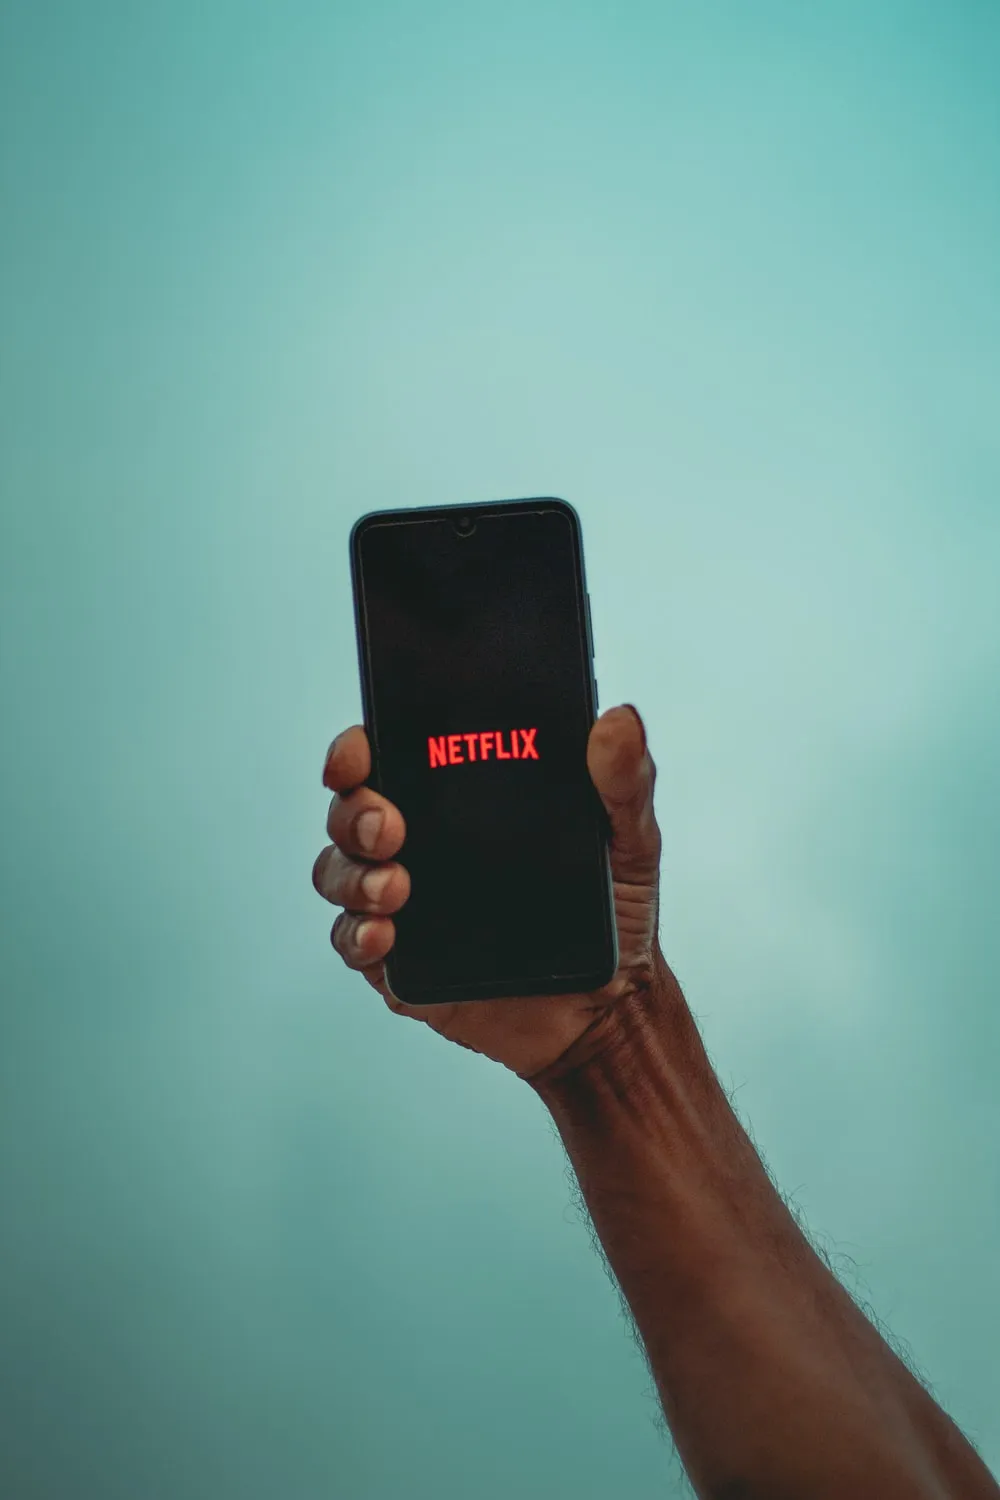 Akcie Netflixu vzrostly za poslední měsíc o 28,6 %, ale stále jsou levné